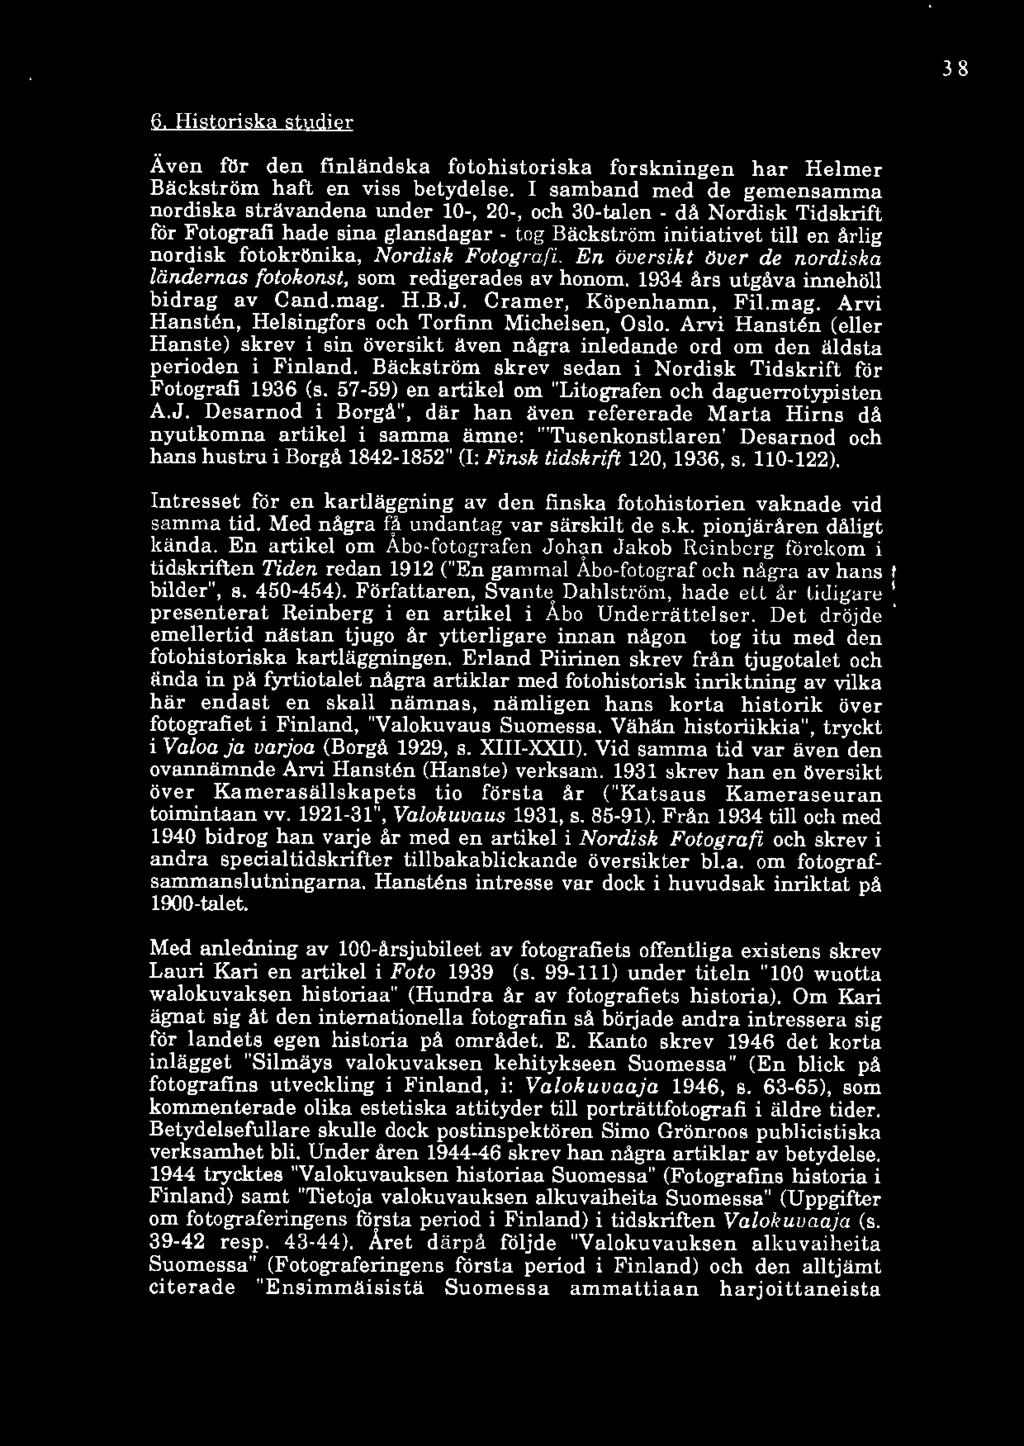 Nordisk Fotografi. En översikt liuer de nordiska ländernas fotokonst, som redigerades av honom. 1934 års utgåva innehöll bidrag av Cand.mag. H.B.J. Cramer, Köpenhamn, Fil.mag. Arvi Hansten, Helsingfors och Torfinn Michelsen, Oslo.